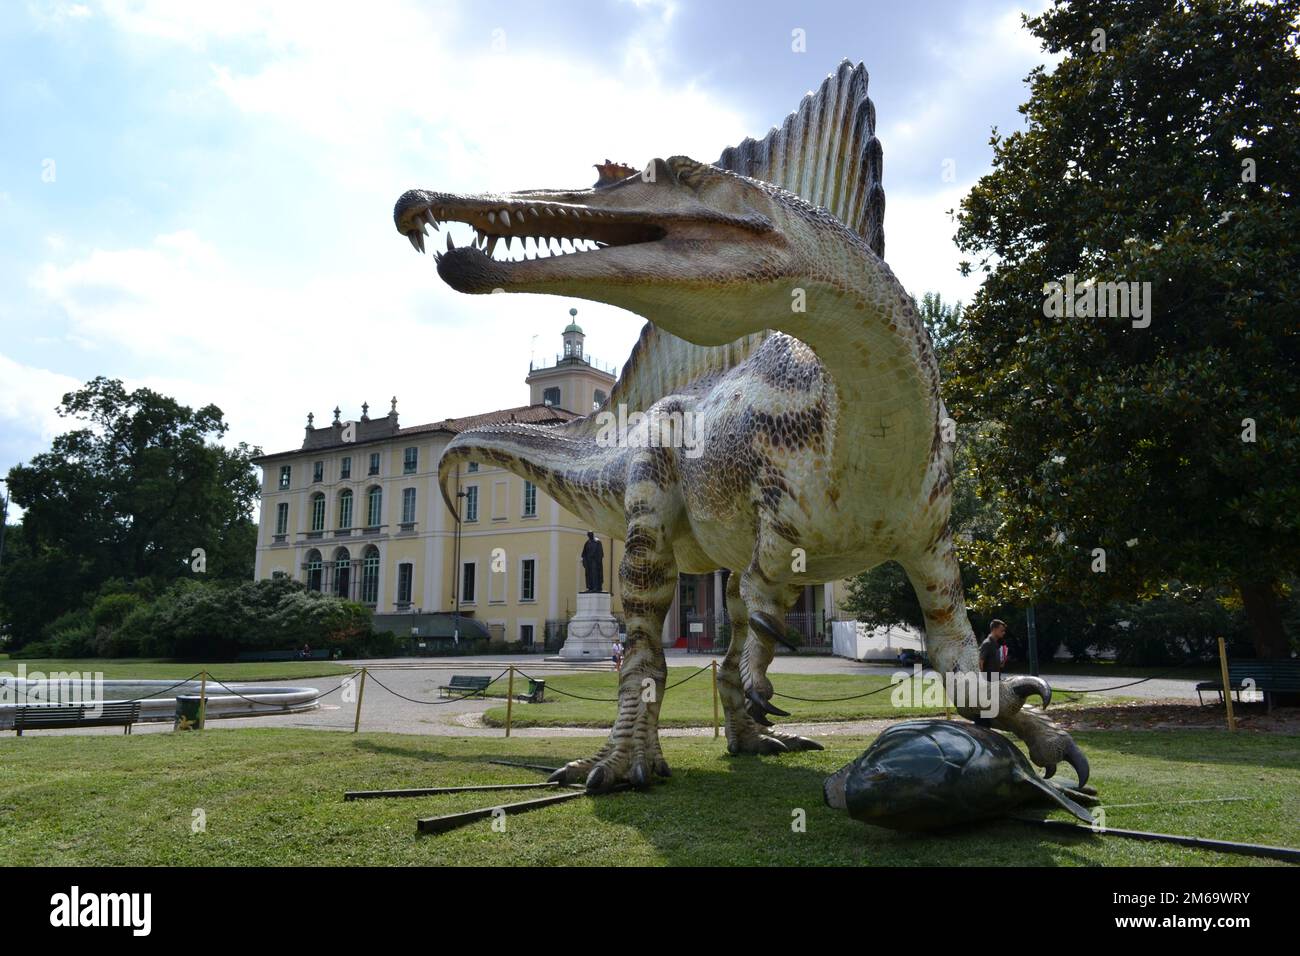 Modelo de tamaño natural del dinosaurio Spinosaurus, el dinosaurio depredador más grande jamás existió y el primer dinosaurio nadador expuesto en jardines públicos. Foto de stock